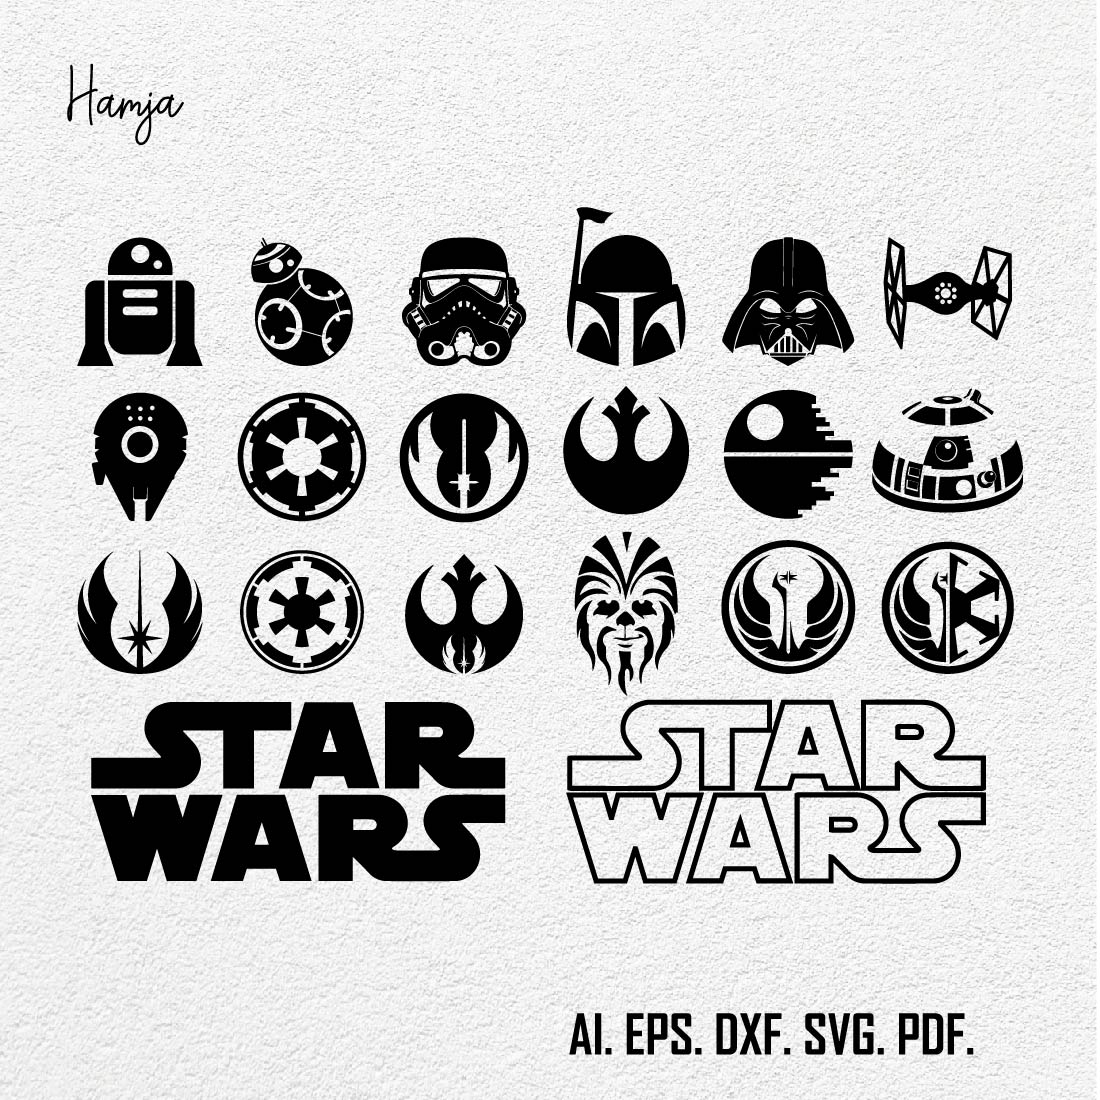 Star wars svg Bundle, Star Wars Squad Goal svg, Star Wars Clipart, Darth Vader svg , Yoda svg, logo ,dxf Instant Download cover image.